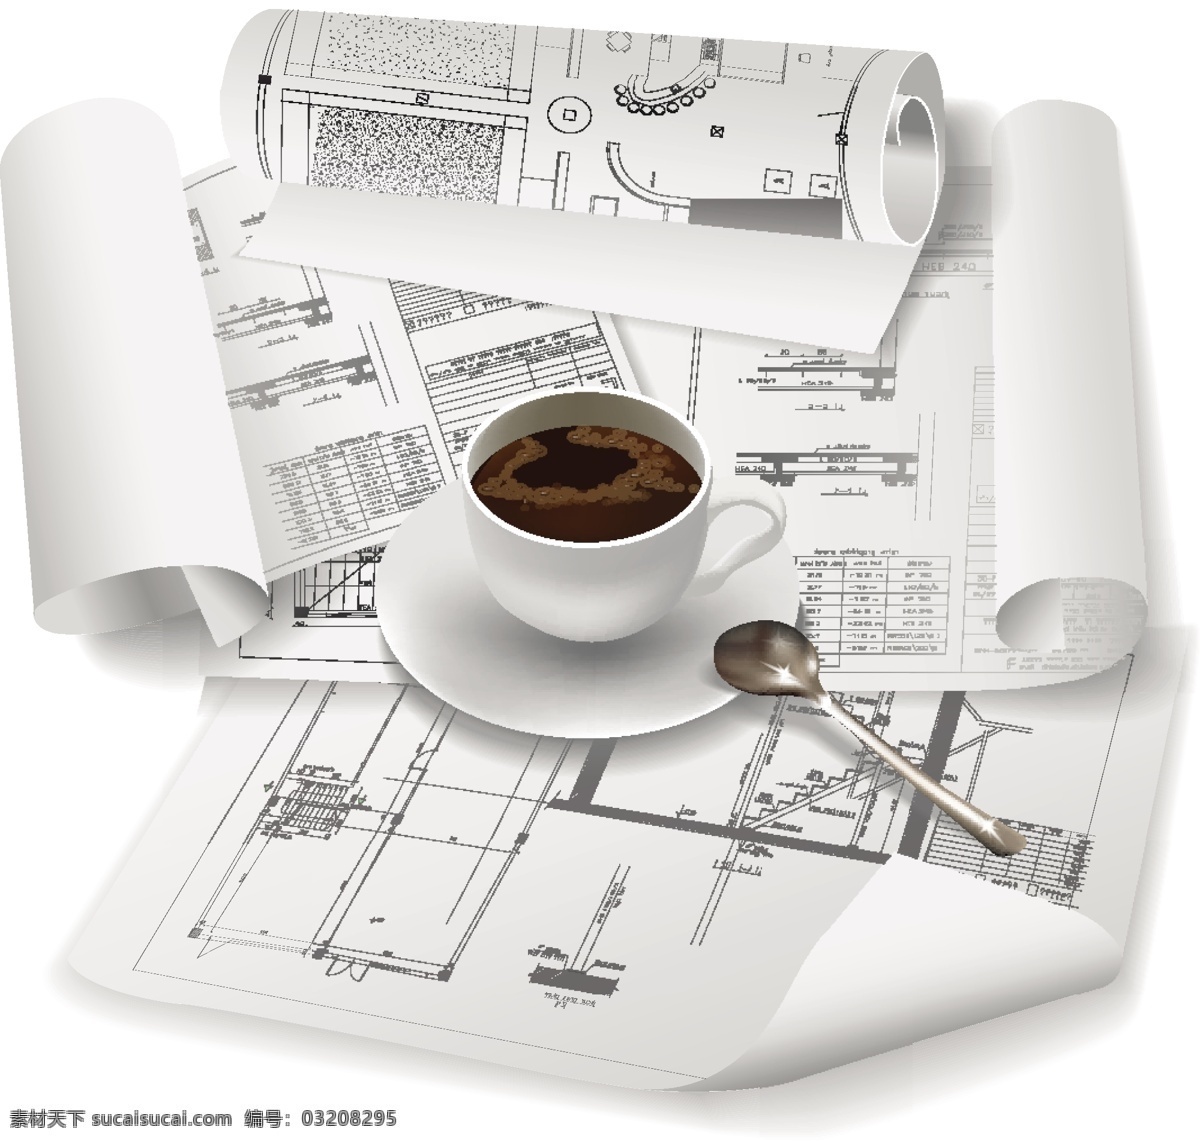 房屋建筑 图纸 矢量 杯 分析 建模 角 卷曲 咖啡杯 勺子 设计图纸 施工 建筑计划 菜 住房 艺术线条 手稿 矢量图 其他矢量图